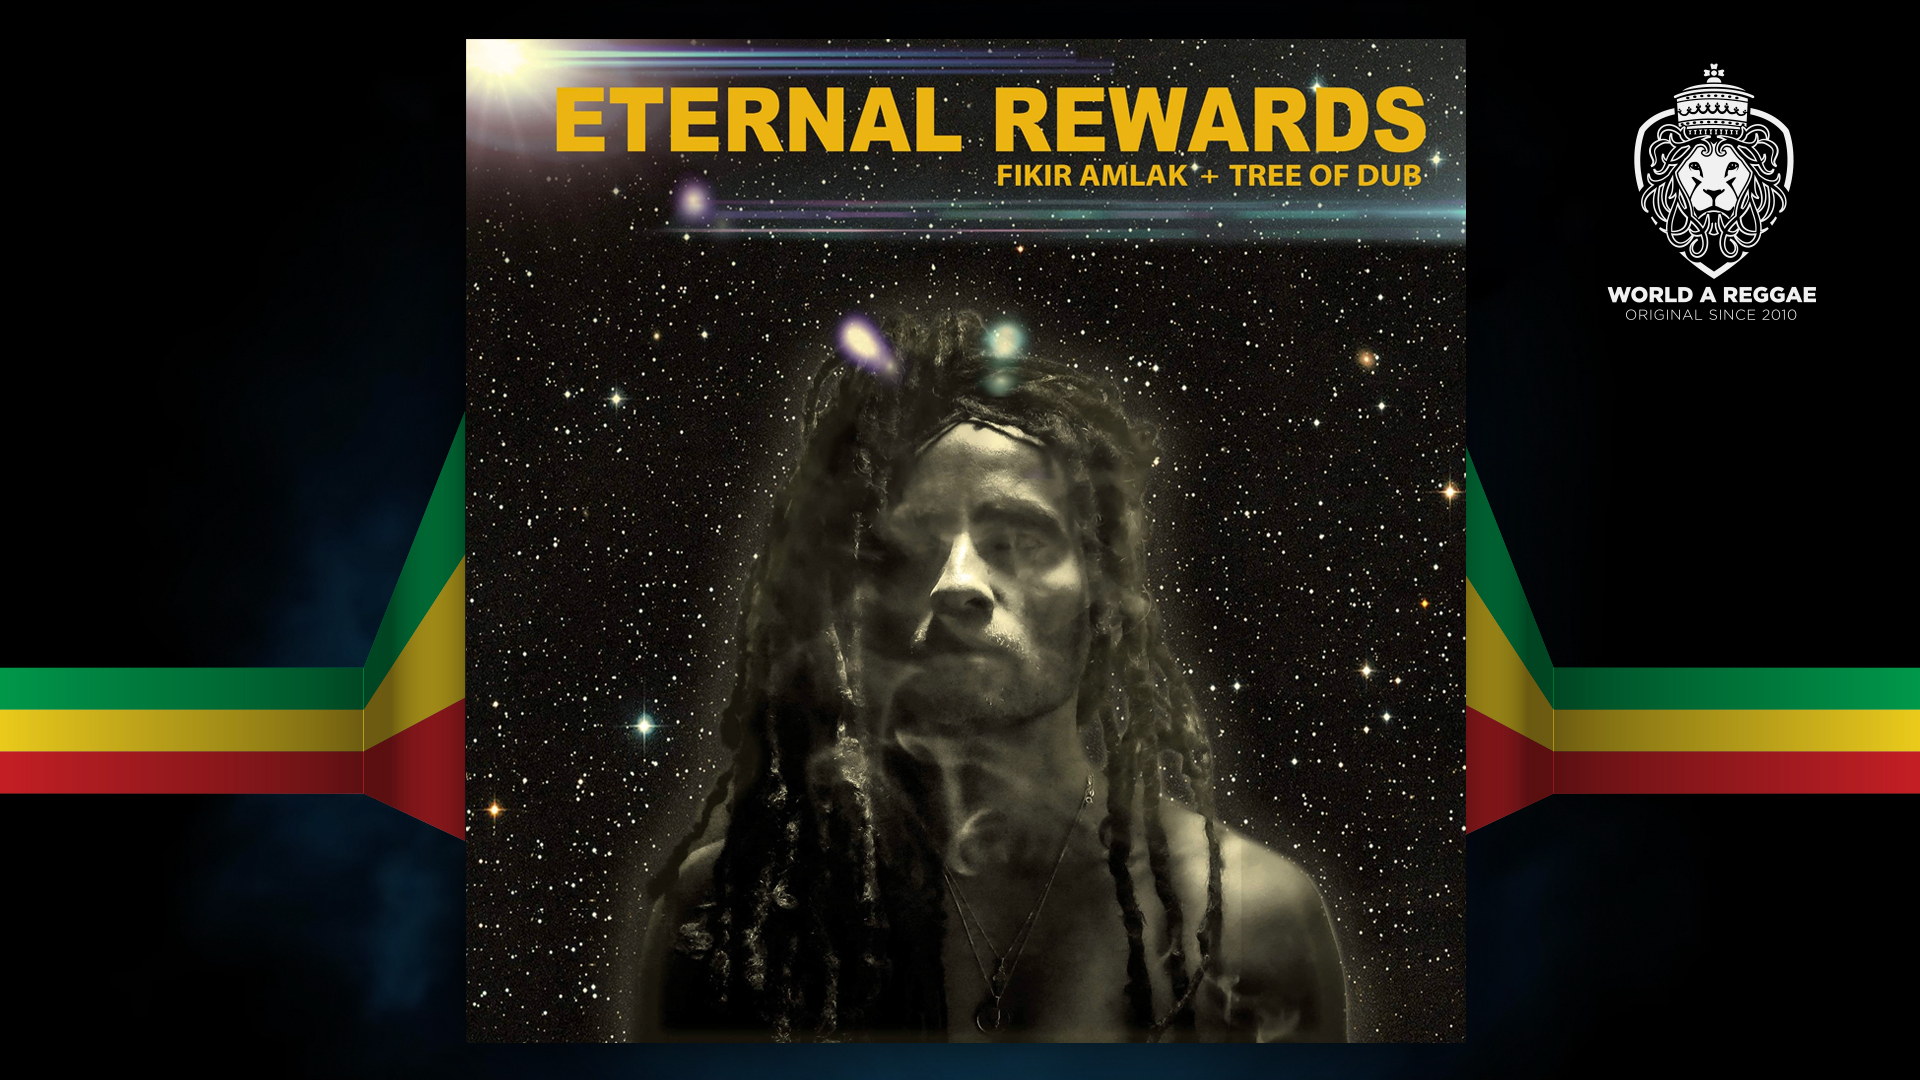 Eternal rewards